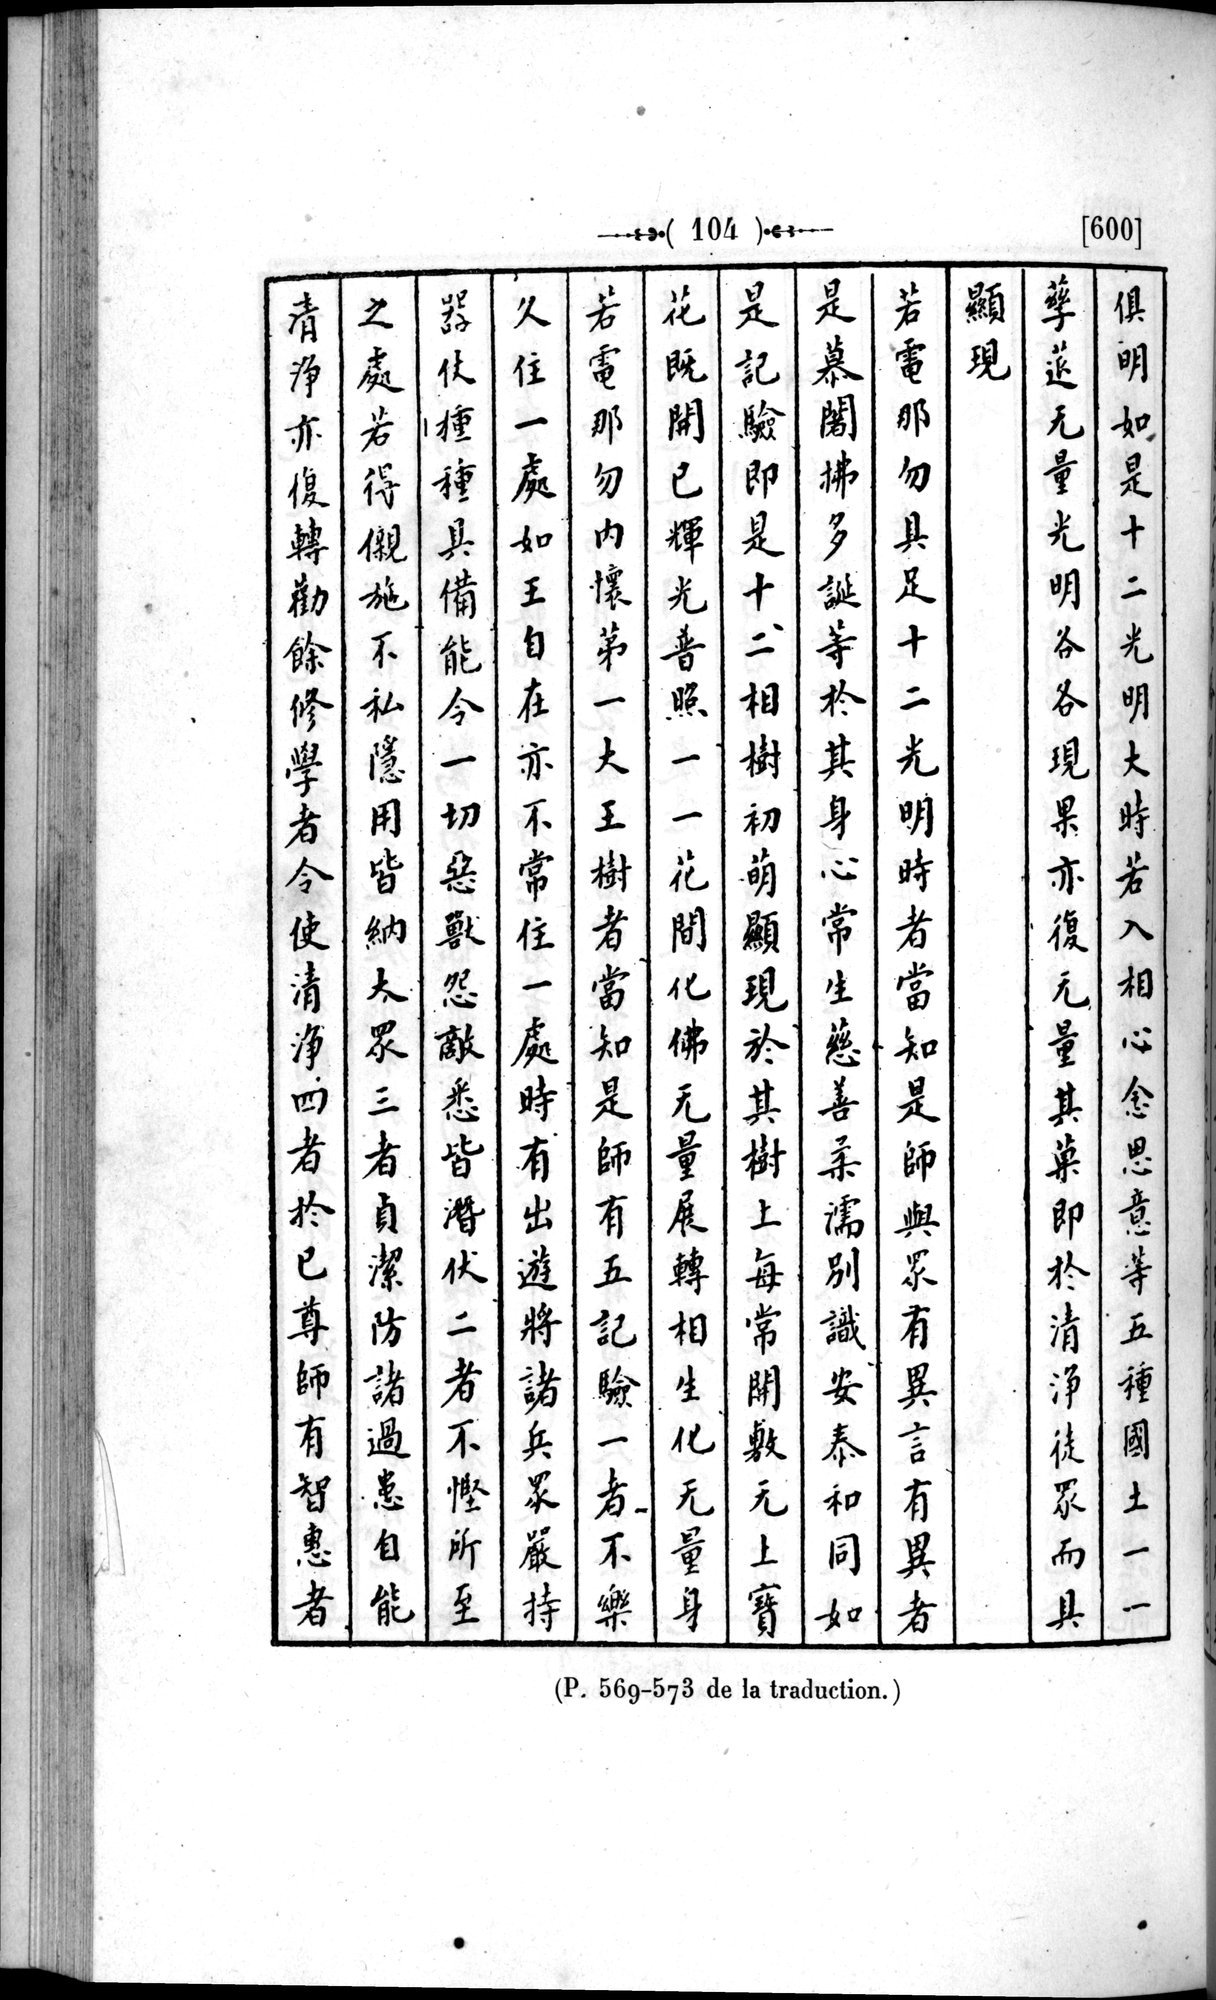 Un traité manichéen retrouvé en Chine : vol.1 / Page 114 (Grayscale High Resolution Image)